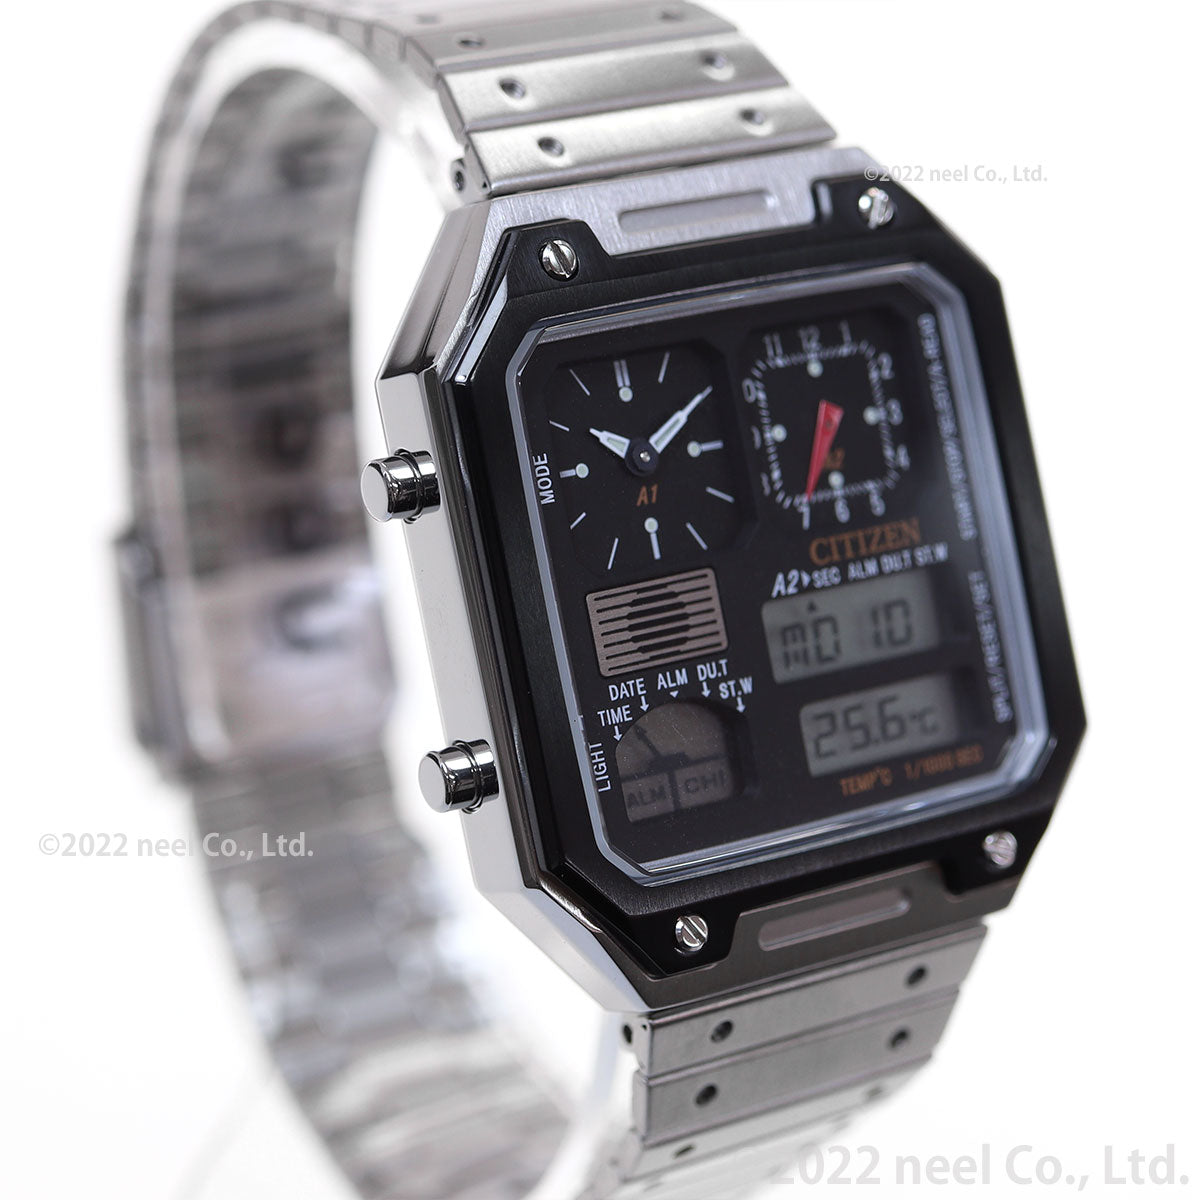 シチズン レコードレーベル RECORD LABEL JG2126-69E サーモセンサー 特定店取扱いモデル 腕時計 メンズ レディース CITIZEN THERMO SENSOR ブラック